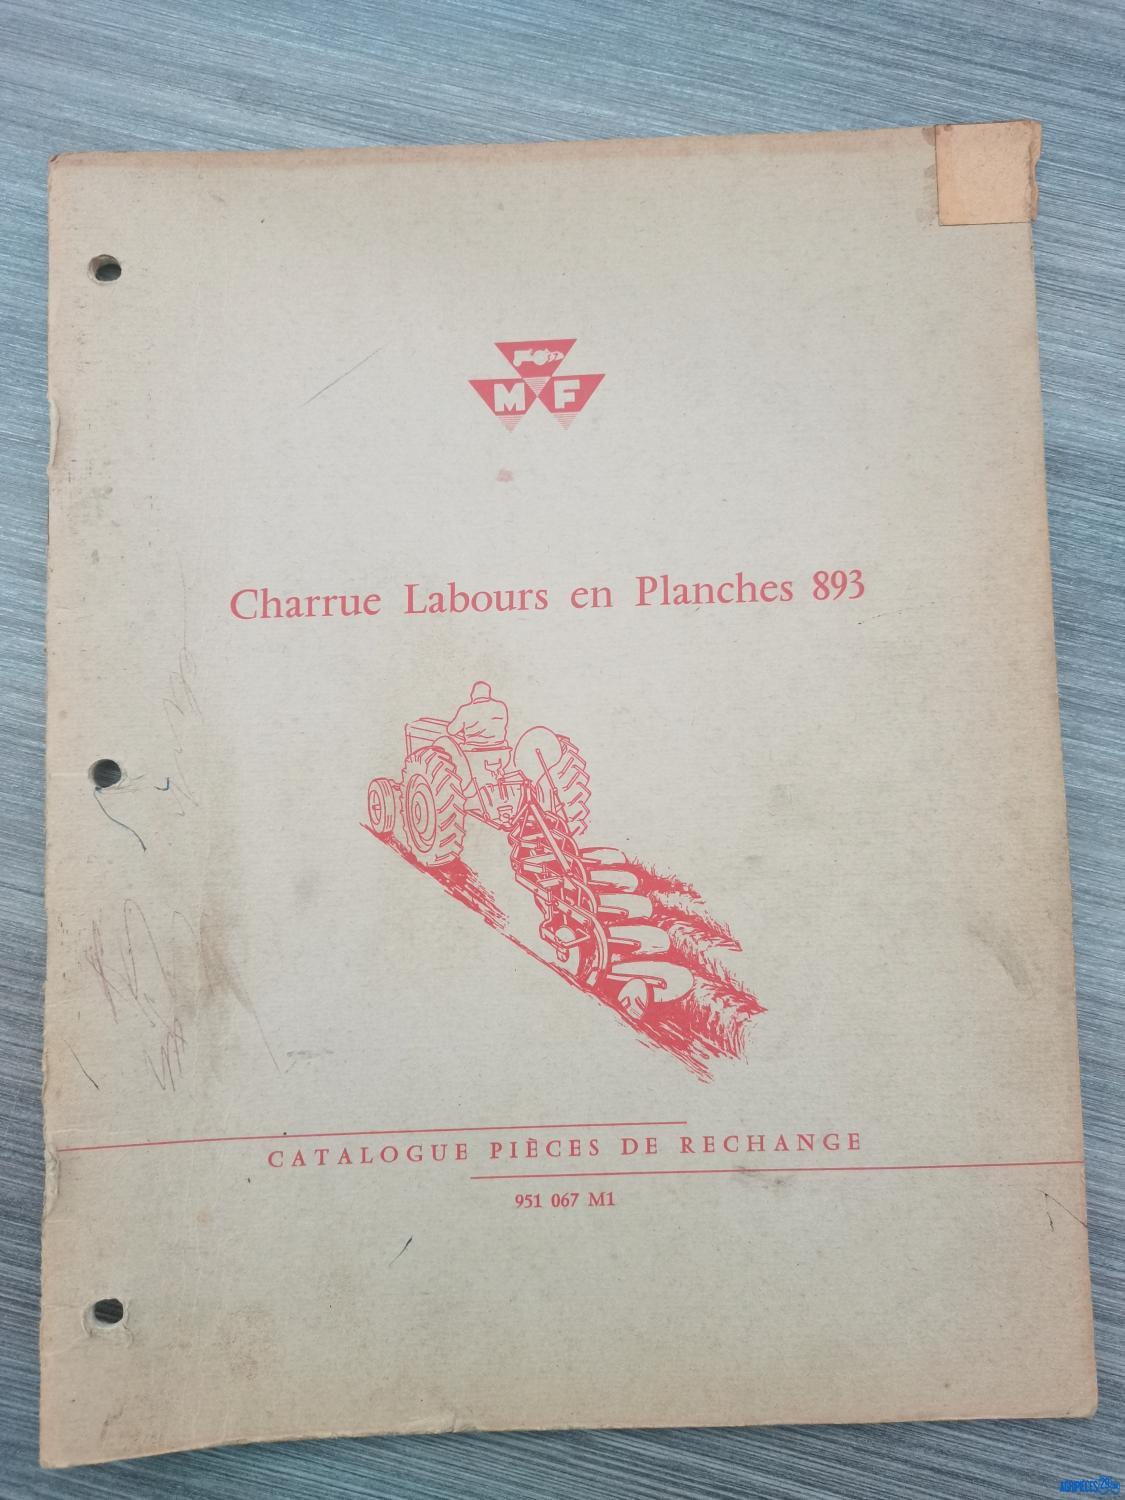 Catalogue de pièces détachées pour charrues labours en planches 893